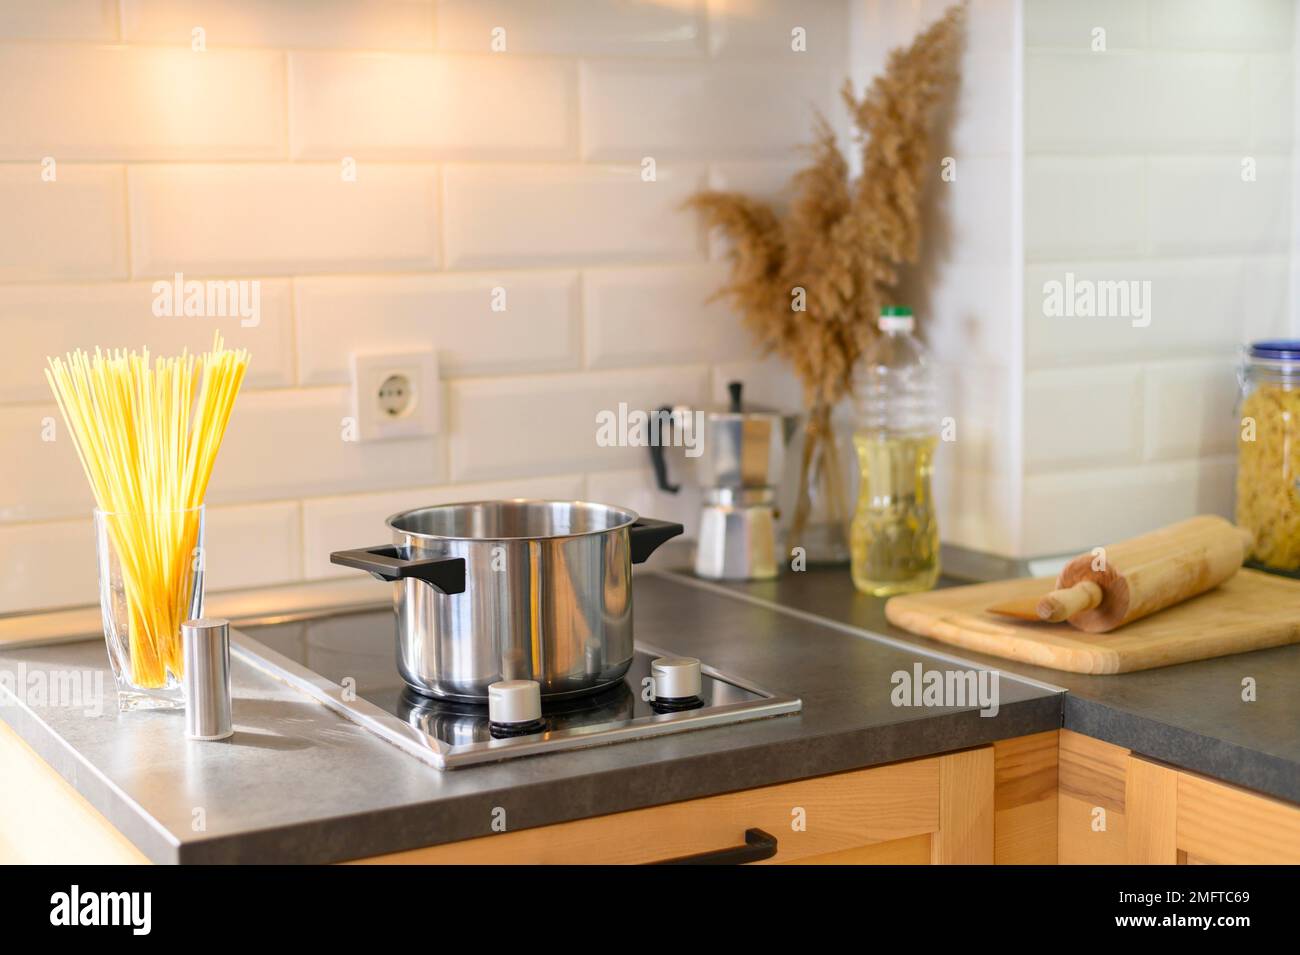 https://c8.alamy.com/compes/2mftc69/moderna-cocina-apartamento-con-vidrio-de-pasta-2mftc69.jpg